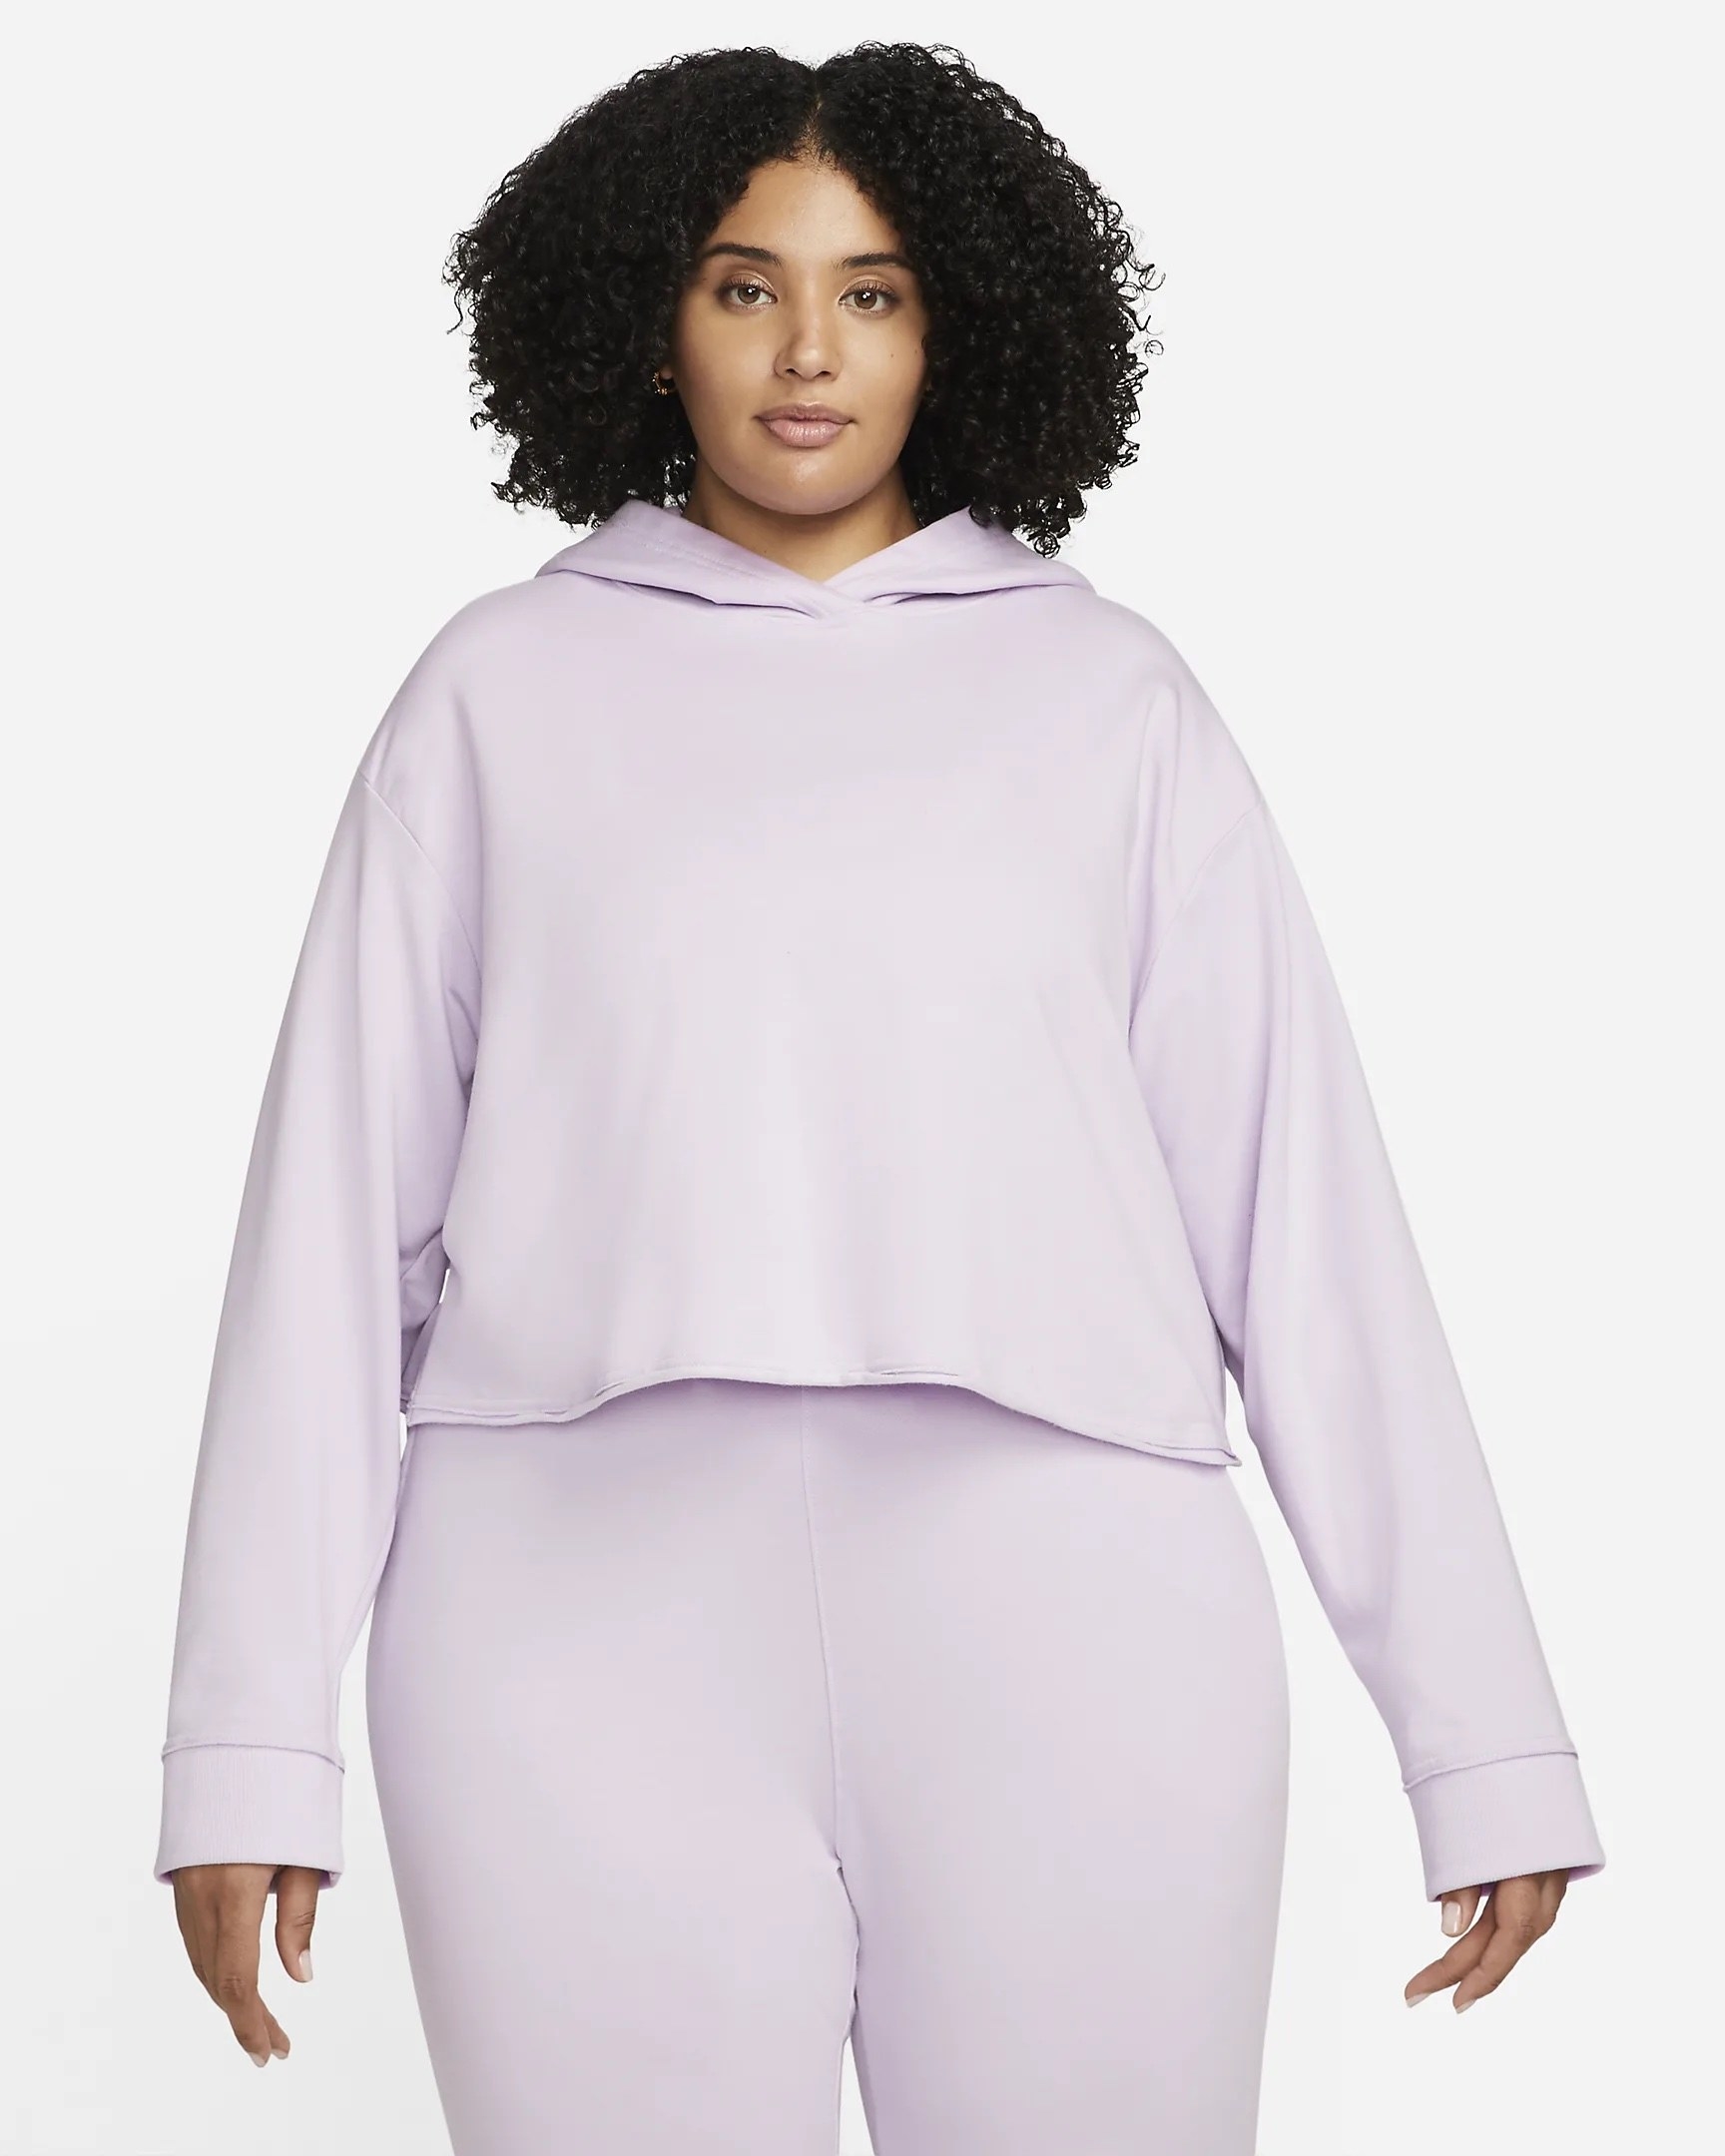 Model in the purple hoodie